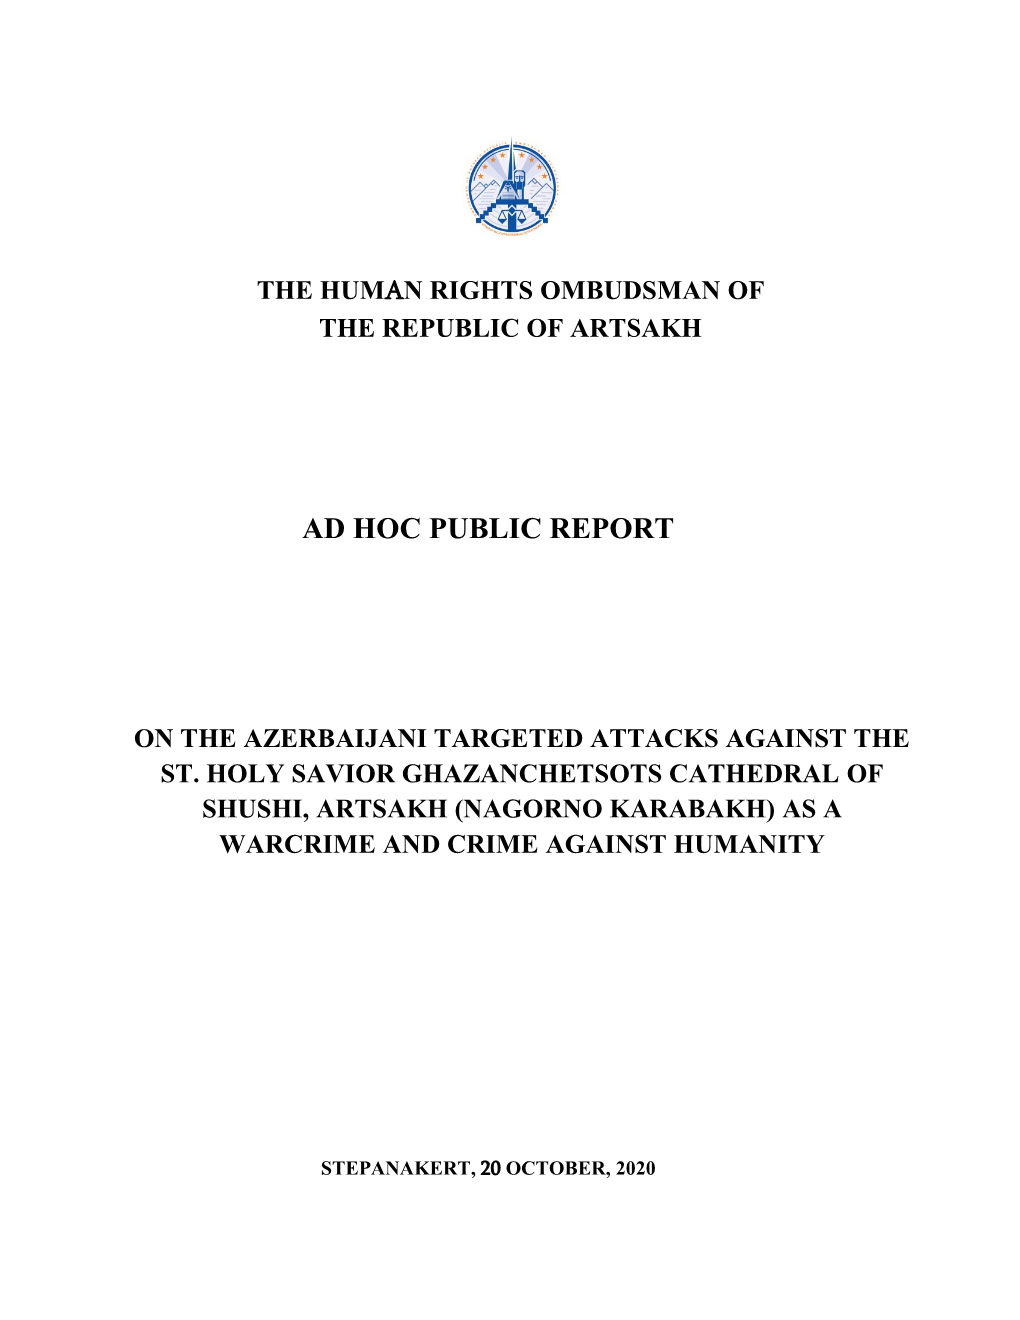 Ad Hoc Public Report